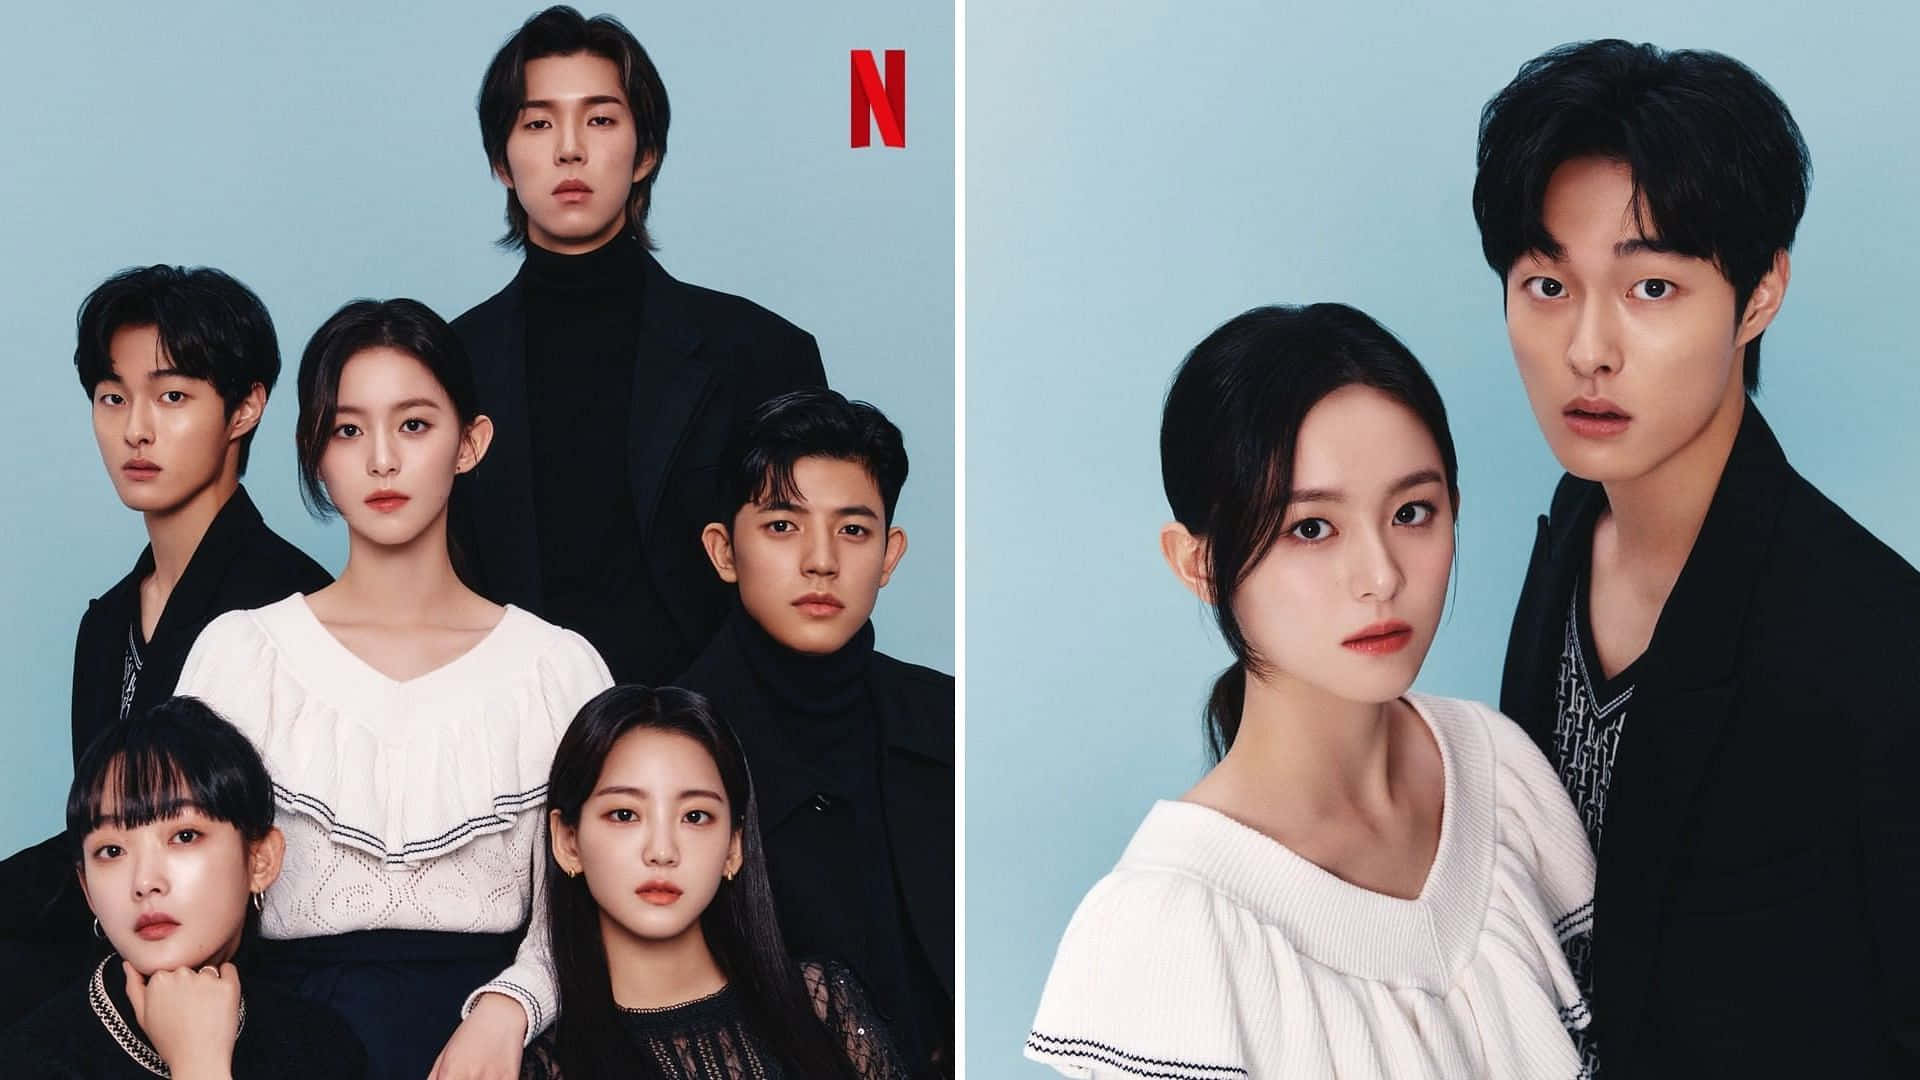 The Cast Of A Korean Drama